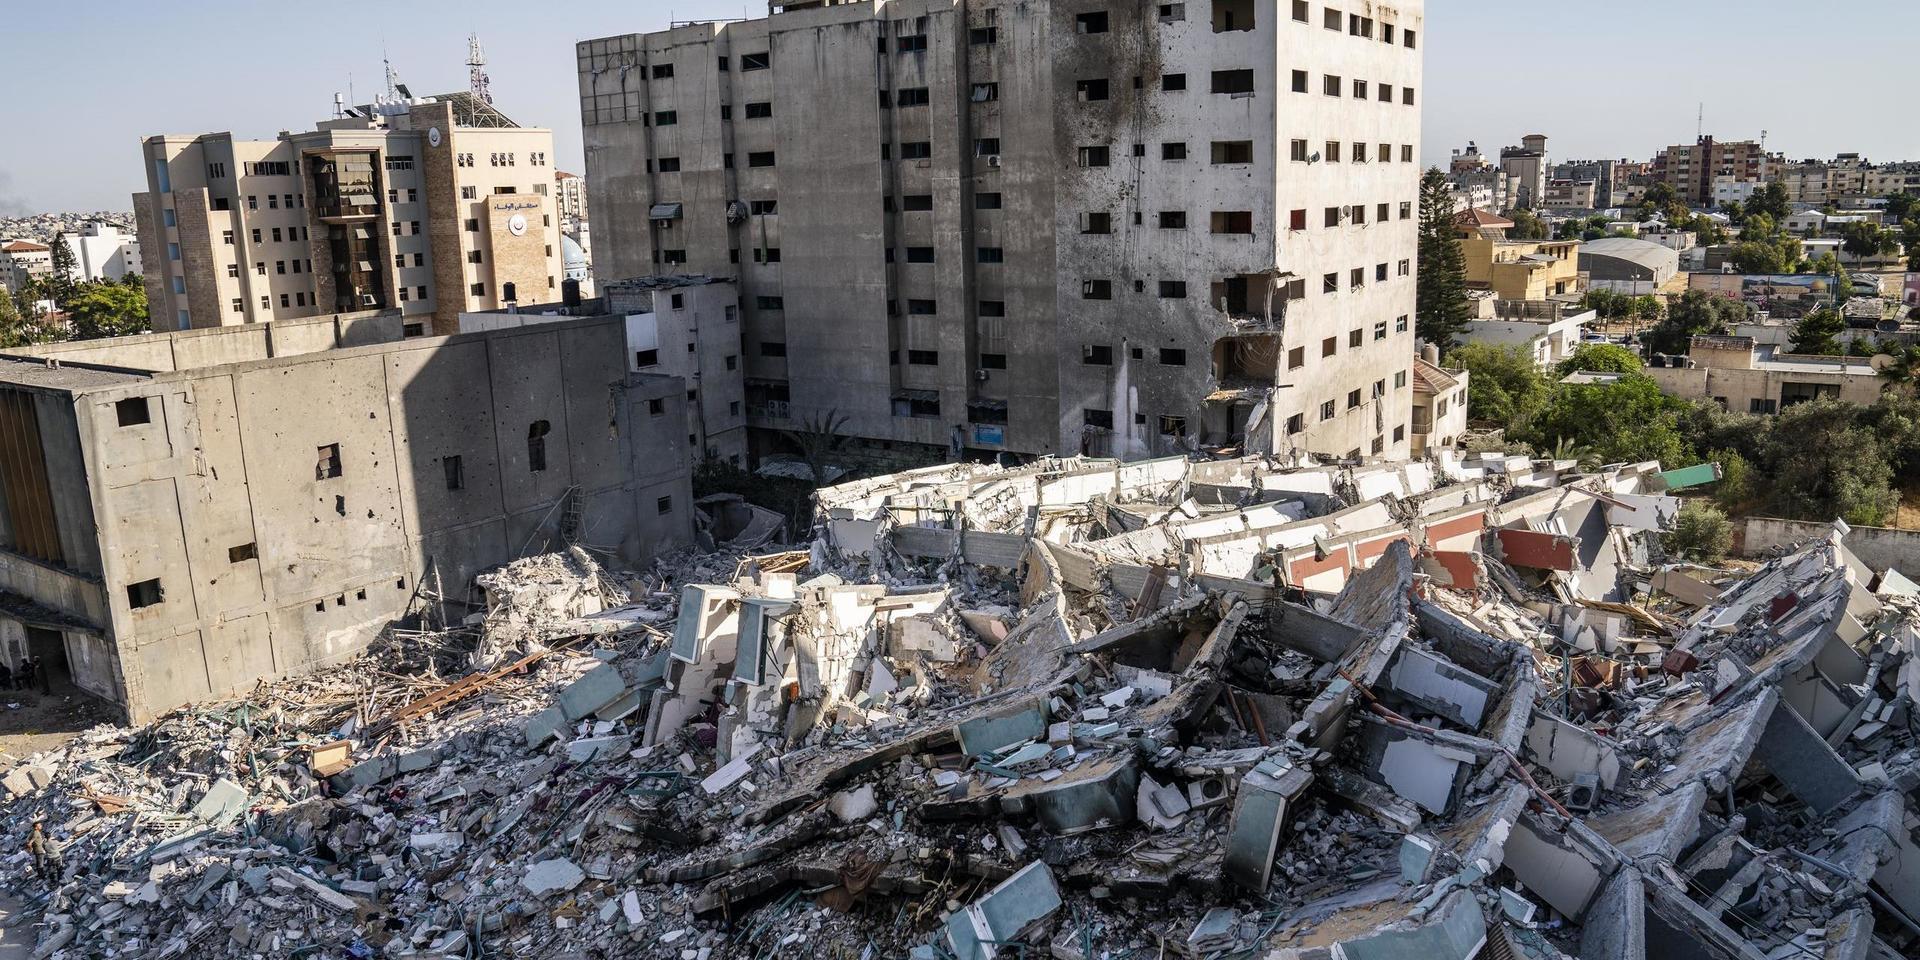 Byggnaden som inhyste nyhetsredaktioner och bostäder totalförstördes i attacken. Bild från den 21 maj.